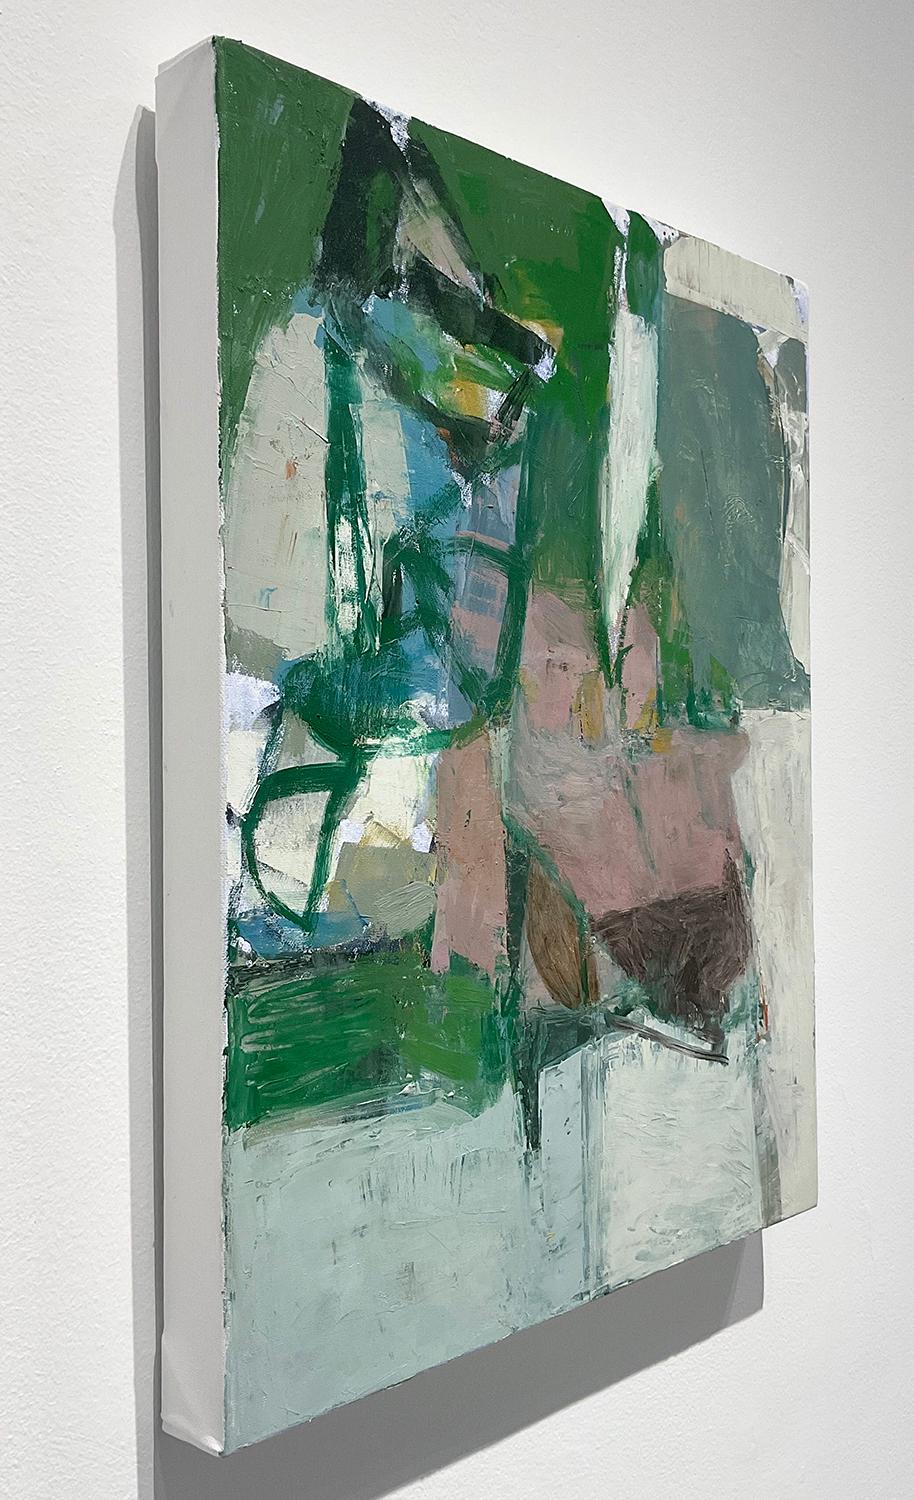 Vertikales, abstraktes expressionistisches Ölgemälde auf Leinwand in Steinblau, staubigem Pfirsich, Grün und Schwarz vor grauem Hintergrund
Was weiß ich von diesem Ort (3)